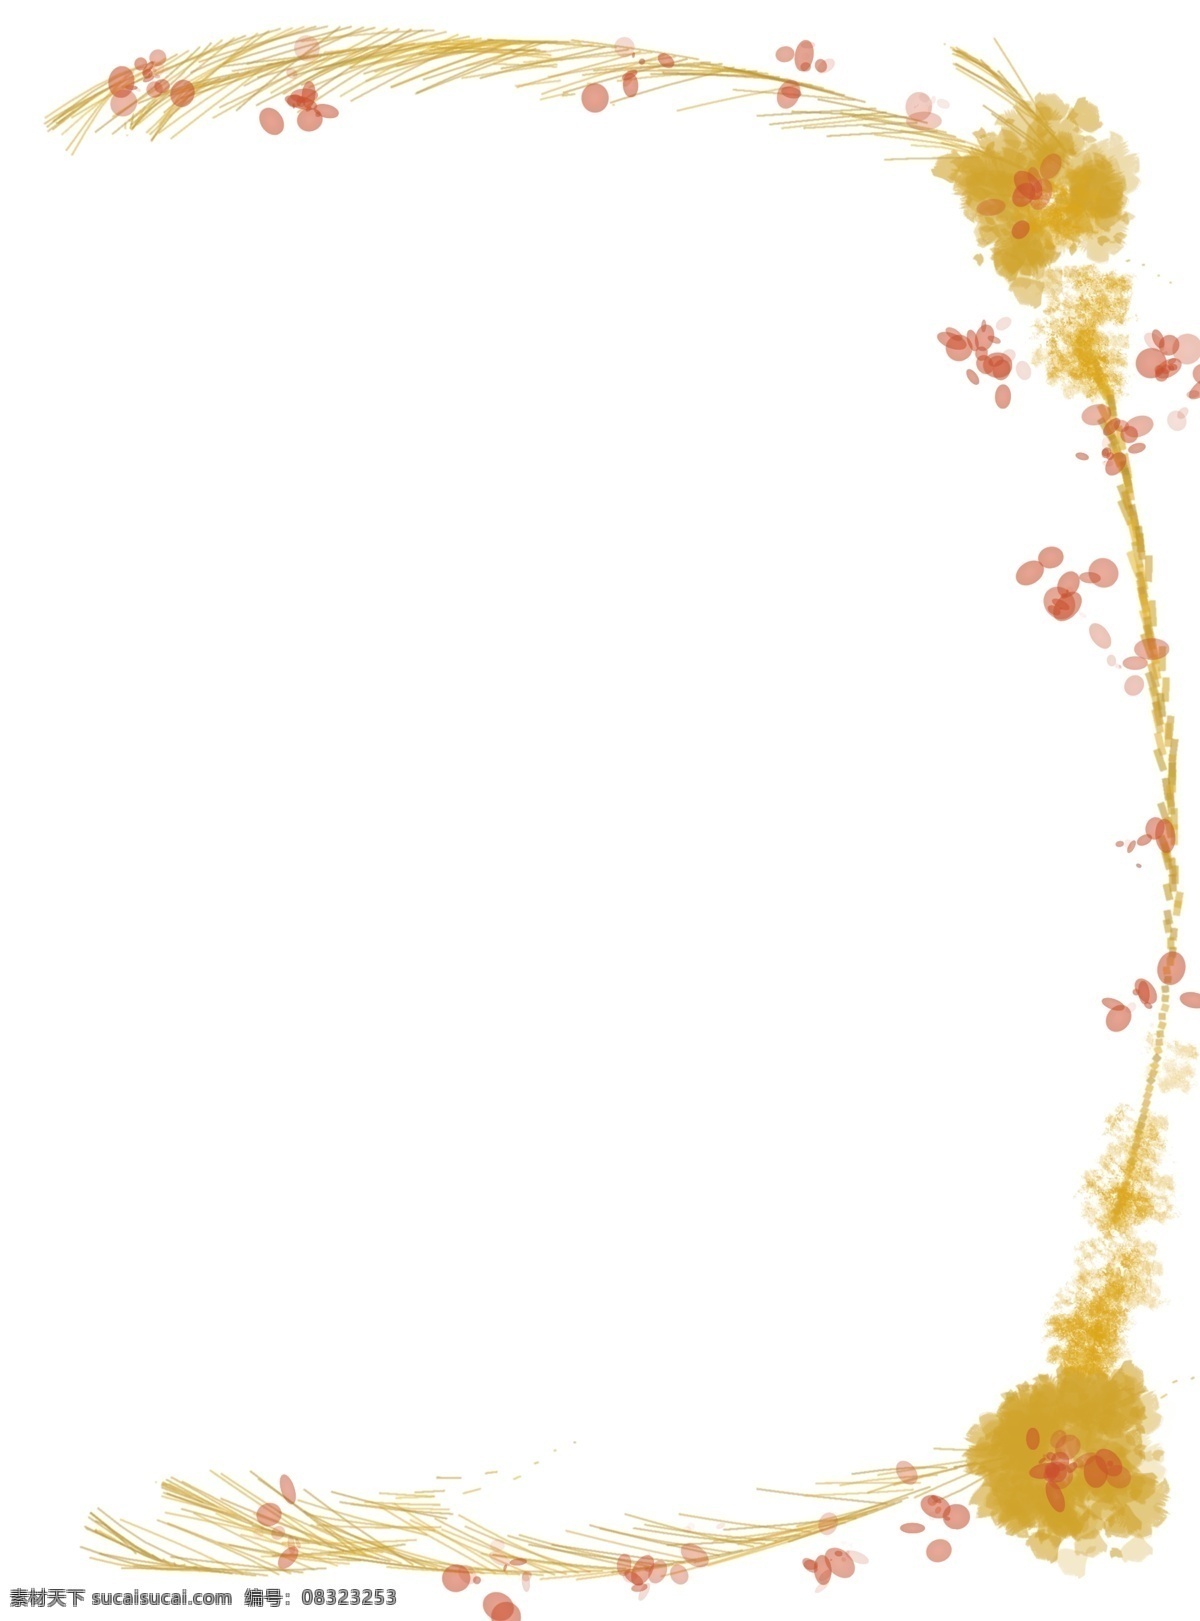 黄色 半圆 边框 插图 精美的边框 黄色边框 卡通插图 红色花朵 植物边框 边框插图 图案边框 设计插图